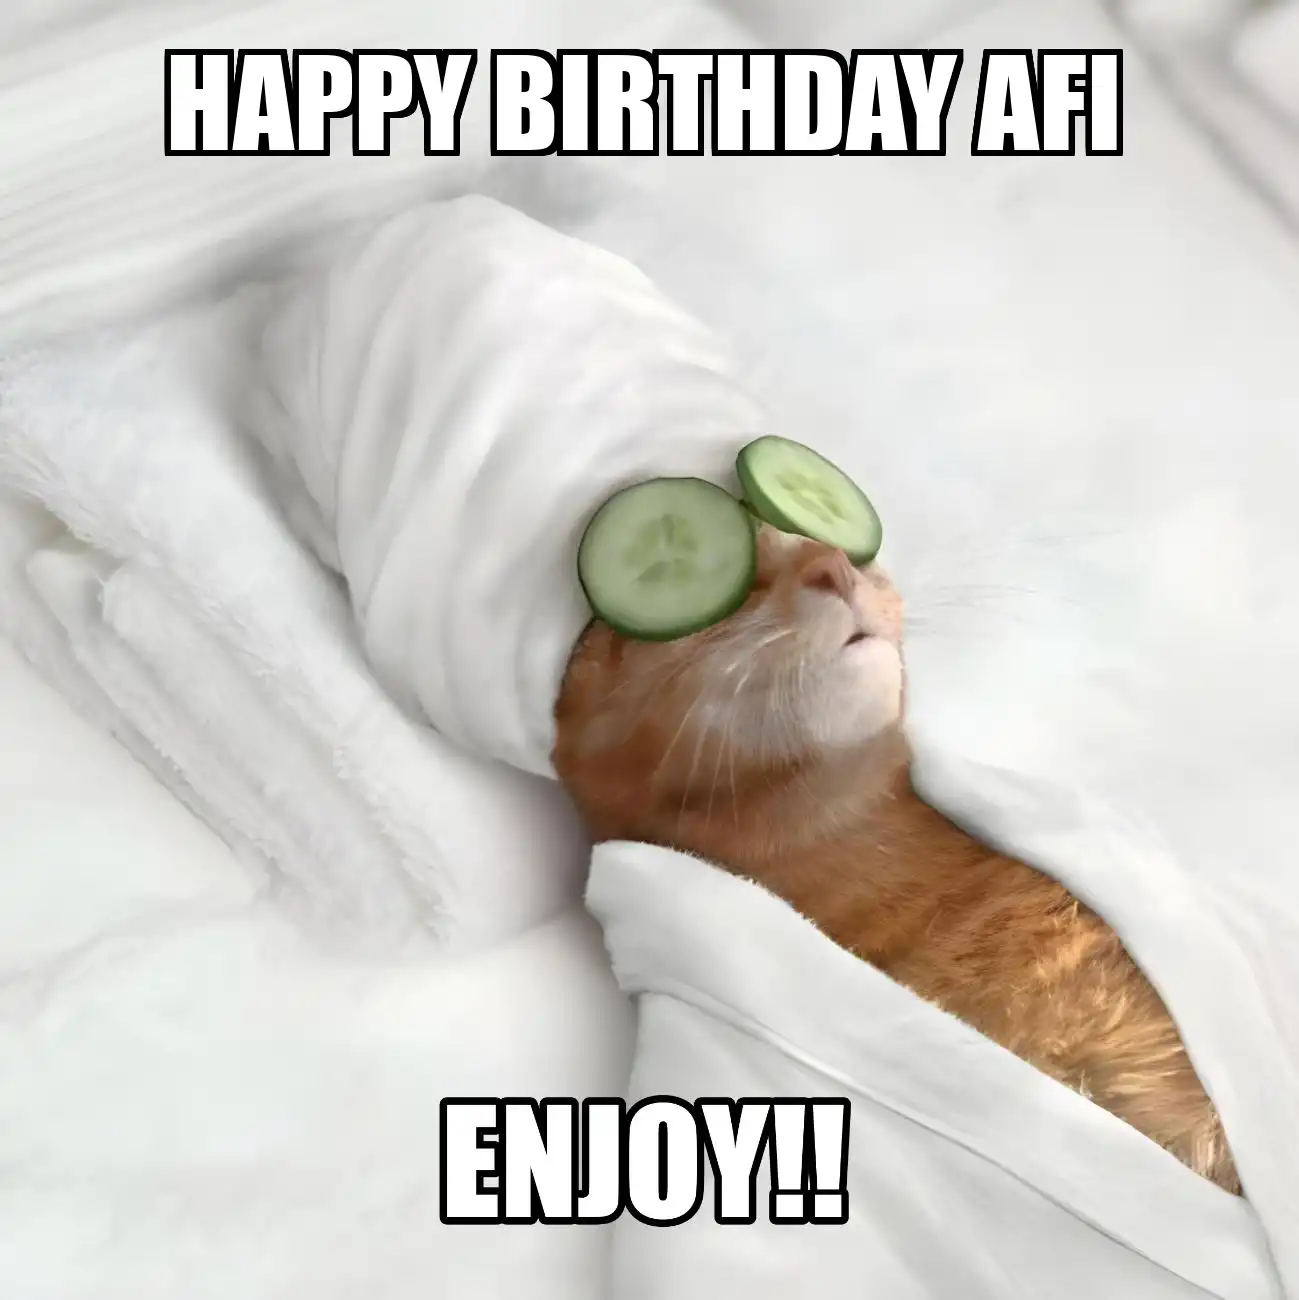 Happy Birthday Afi Enjoy Cat Meme